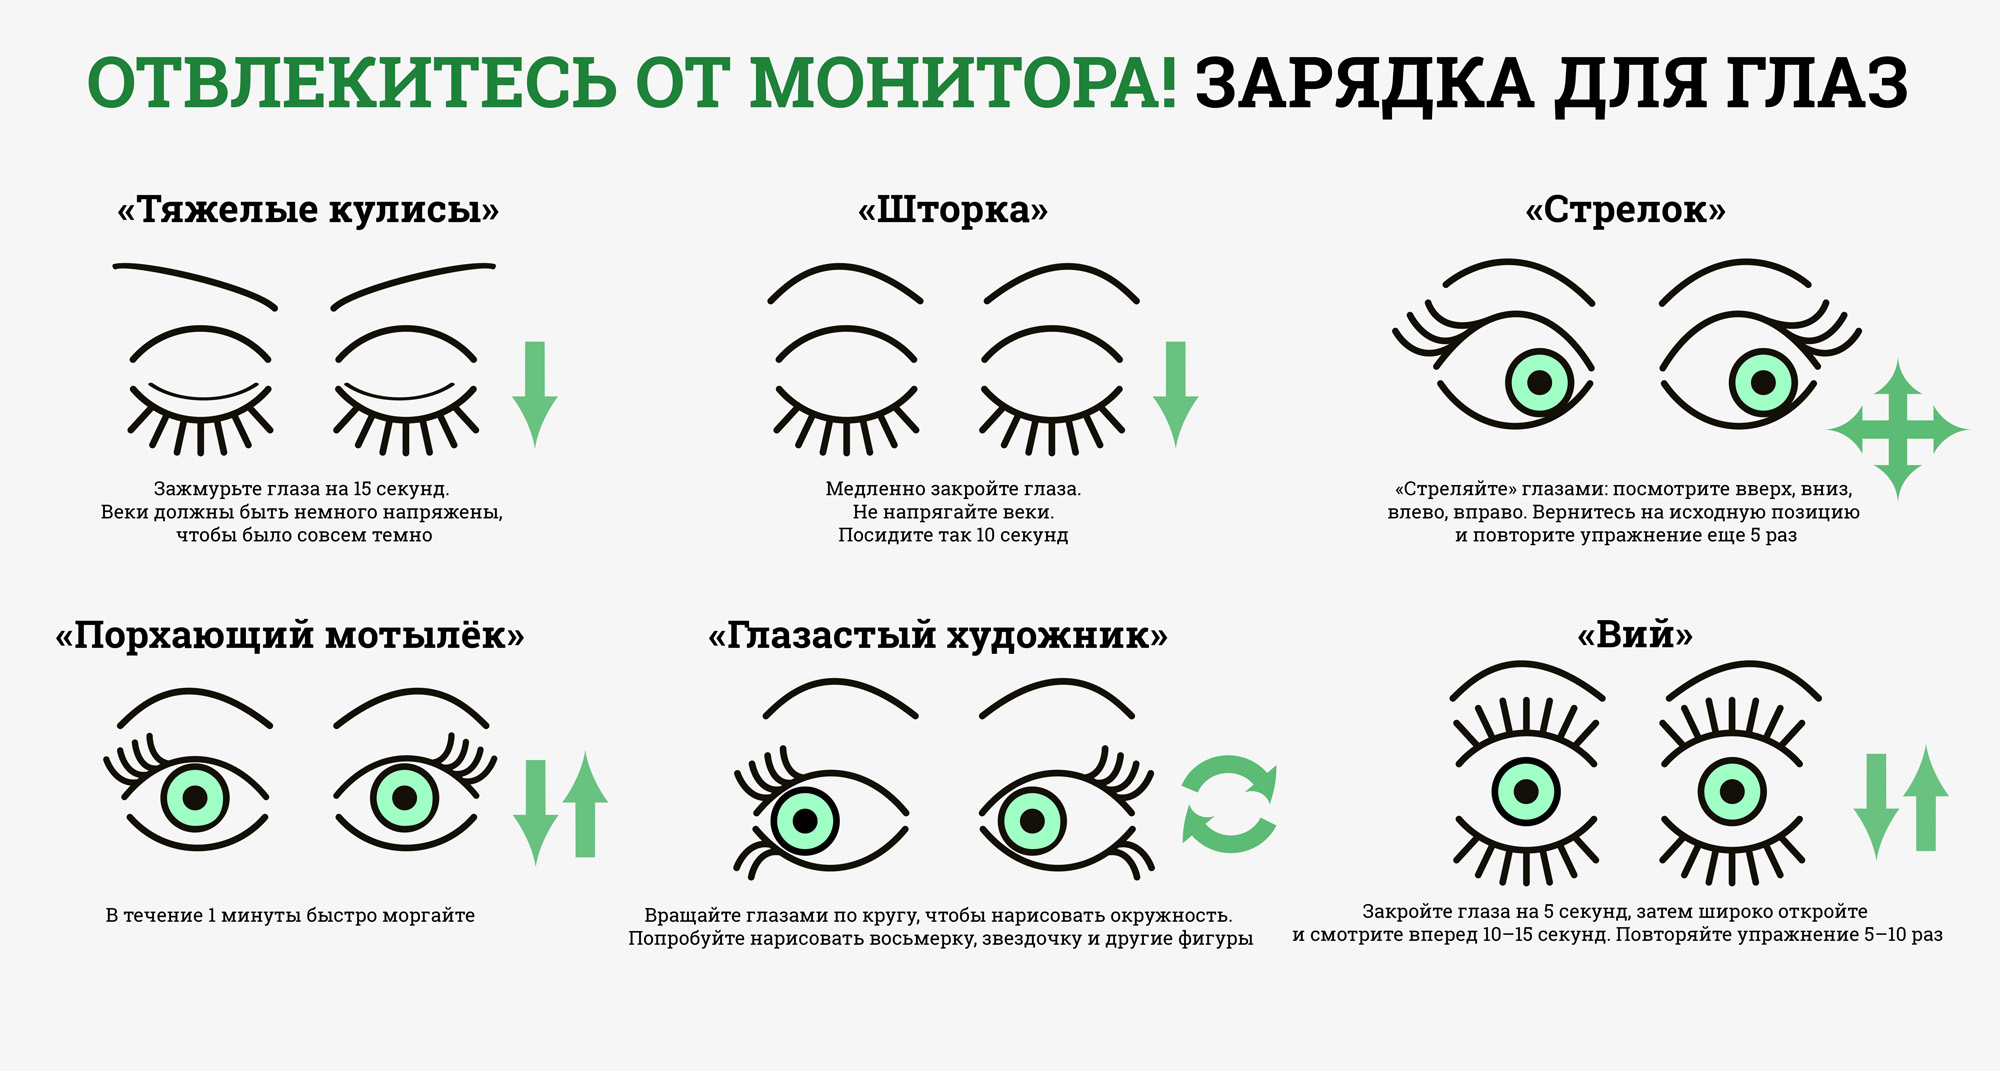 Упражнения для восстановления бинокулярного зрения у взрослых - энциклопедия ochkov.net